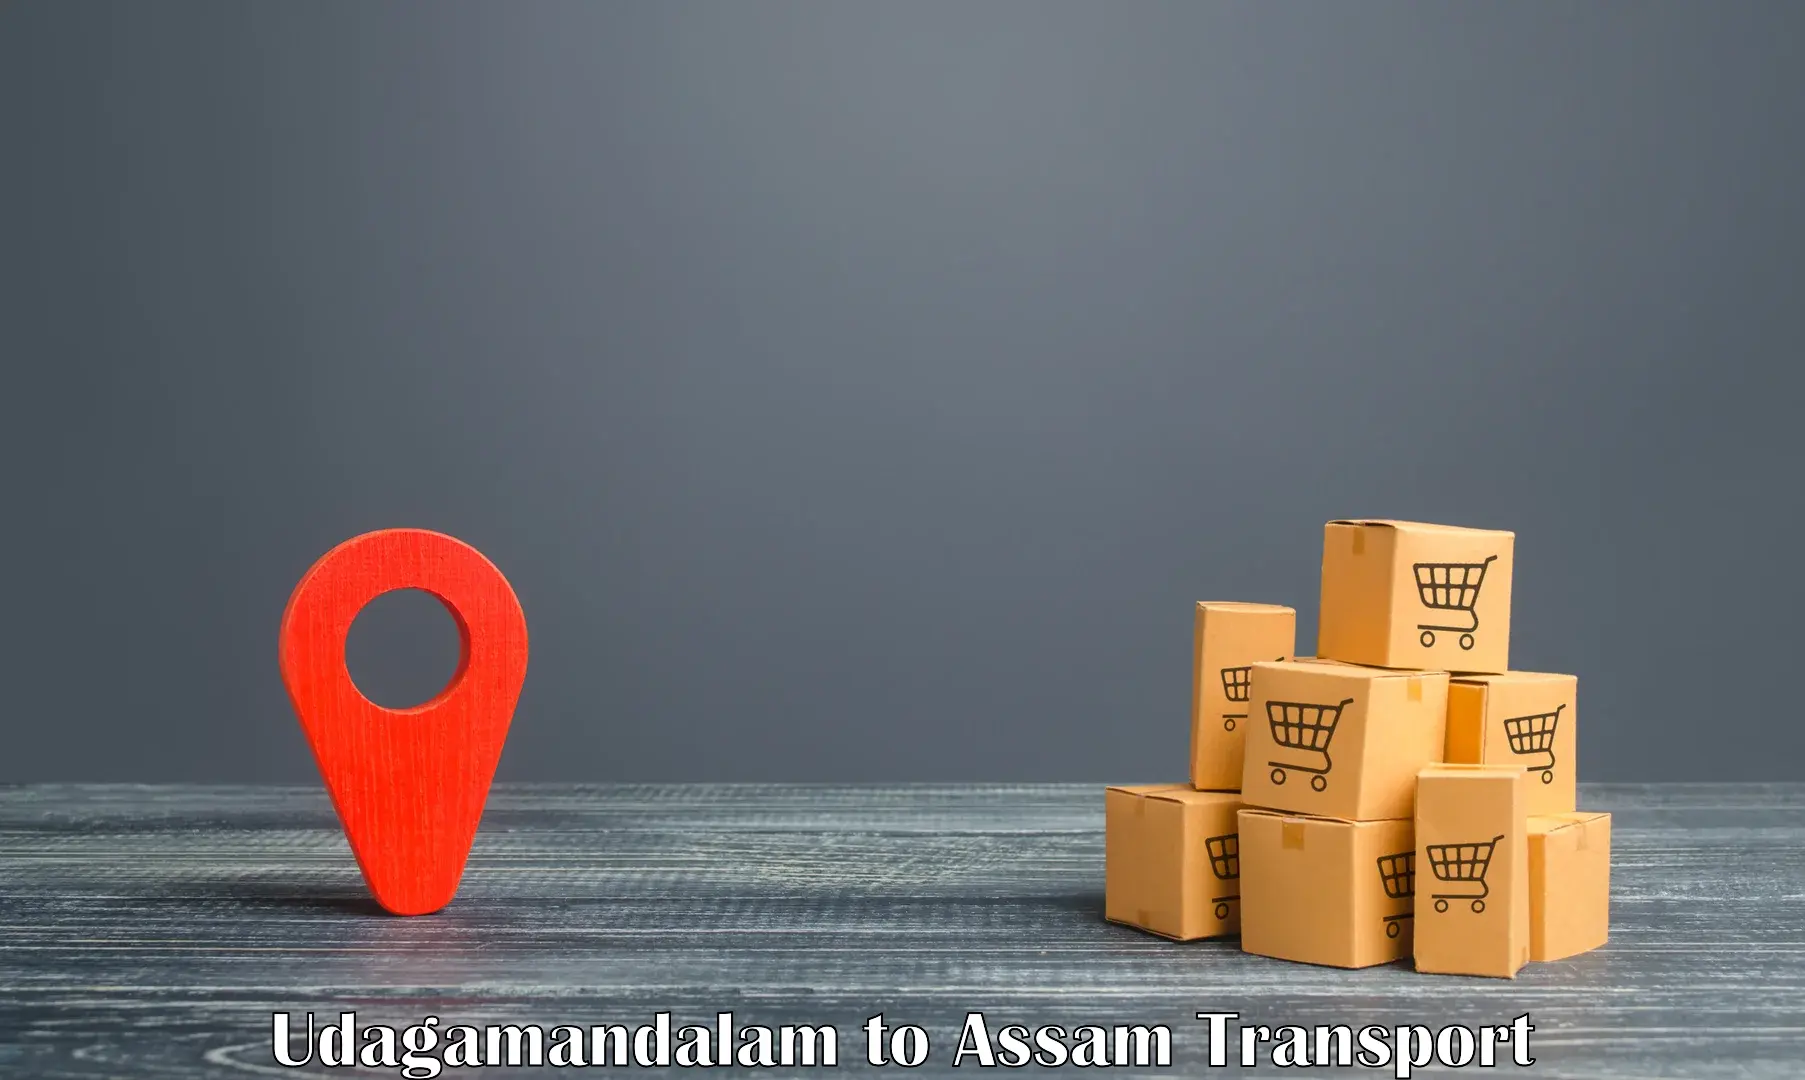 Transportation services Udagamandalam to Pathsala